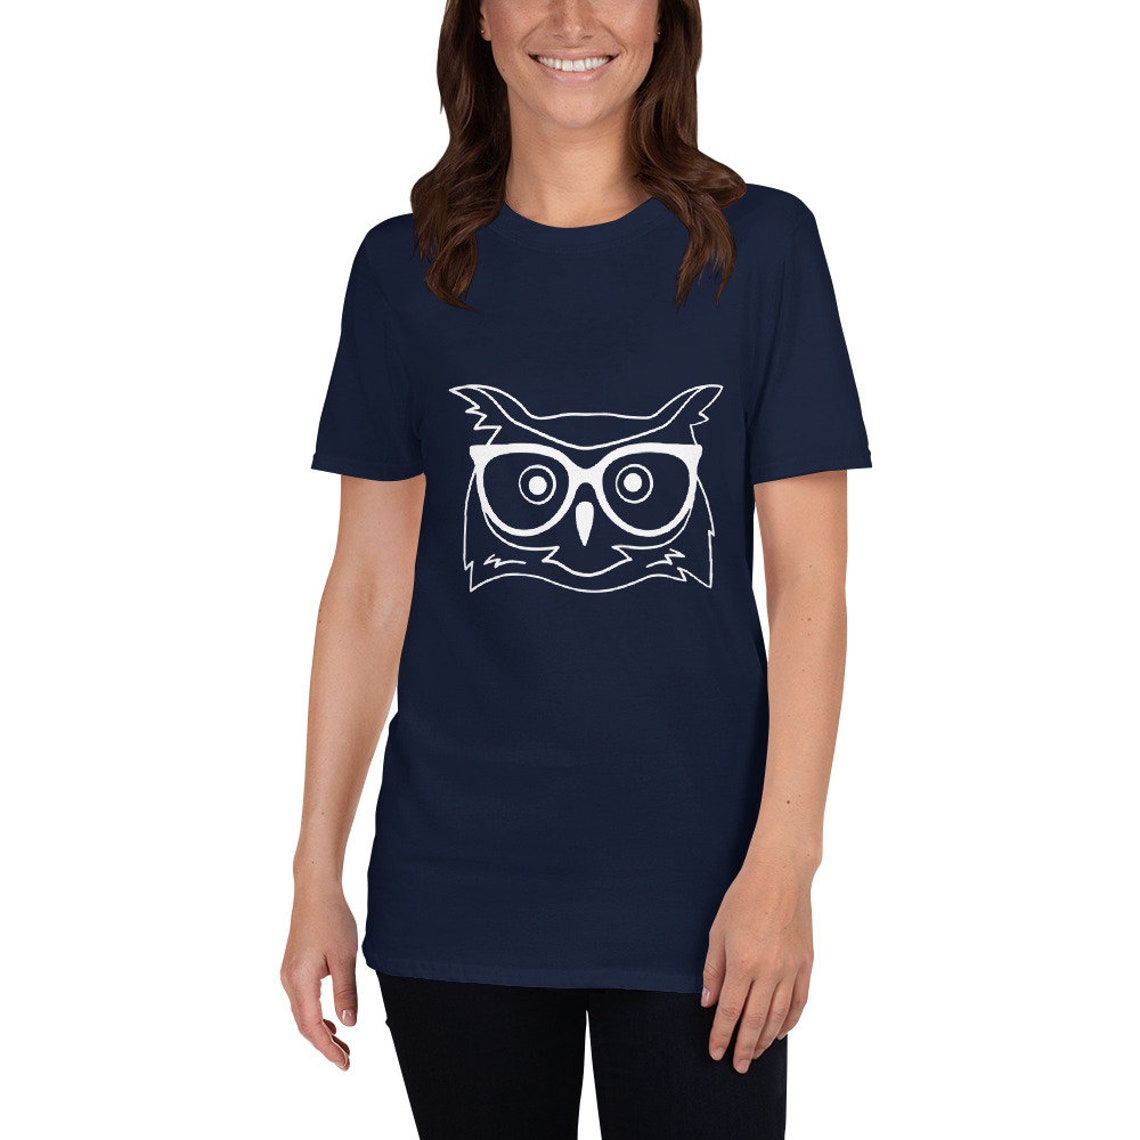 Wise owl Short-Sleeve Unisex T-Shirt | Etsy